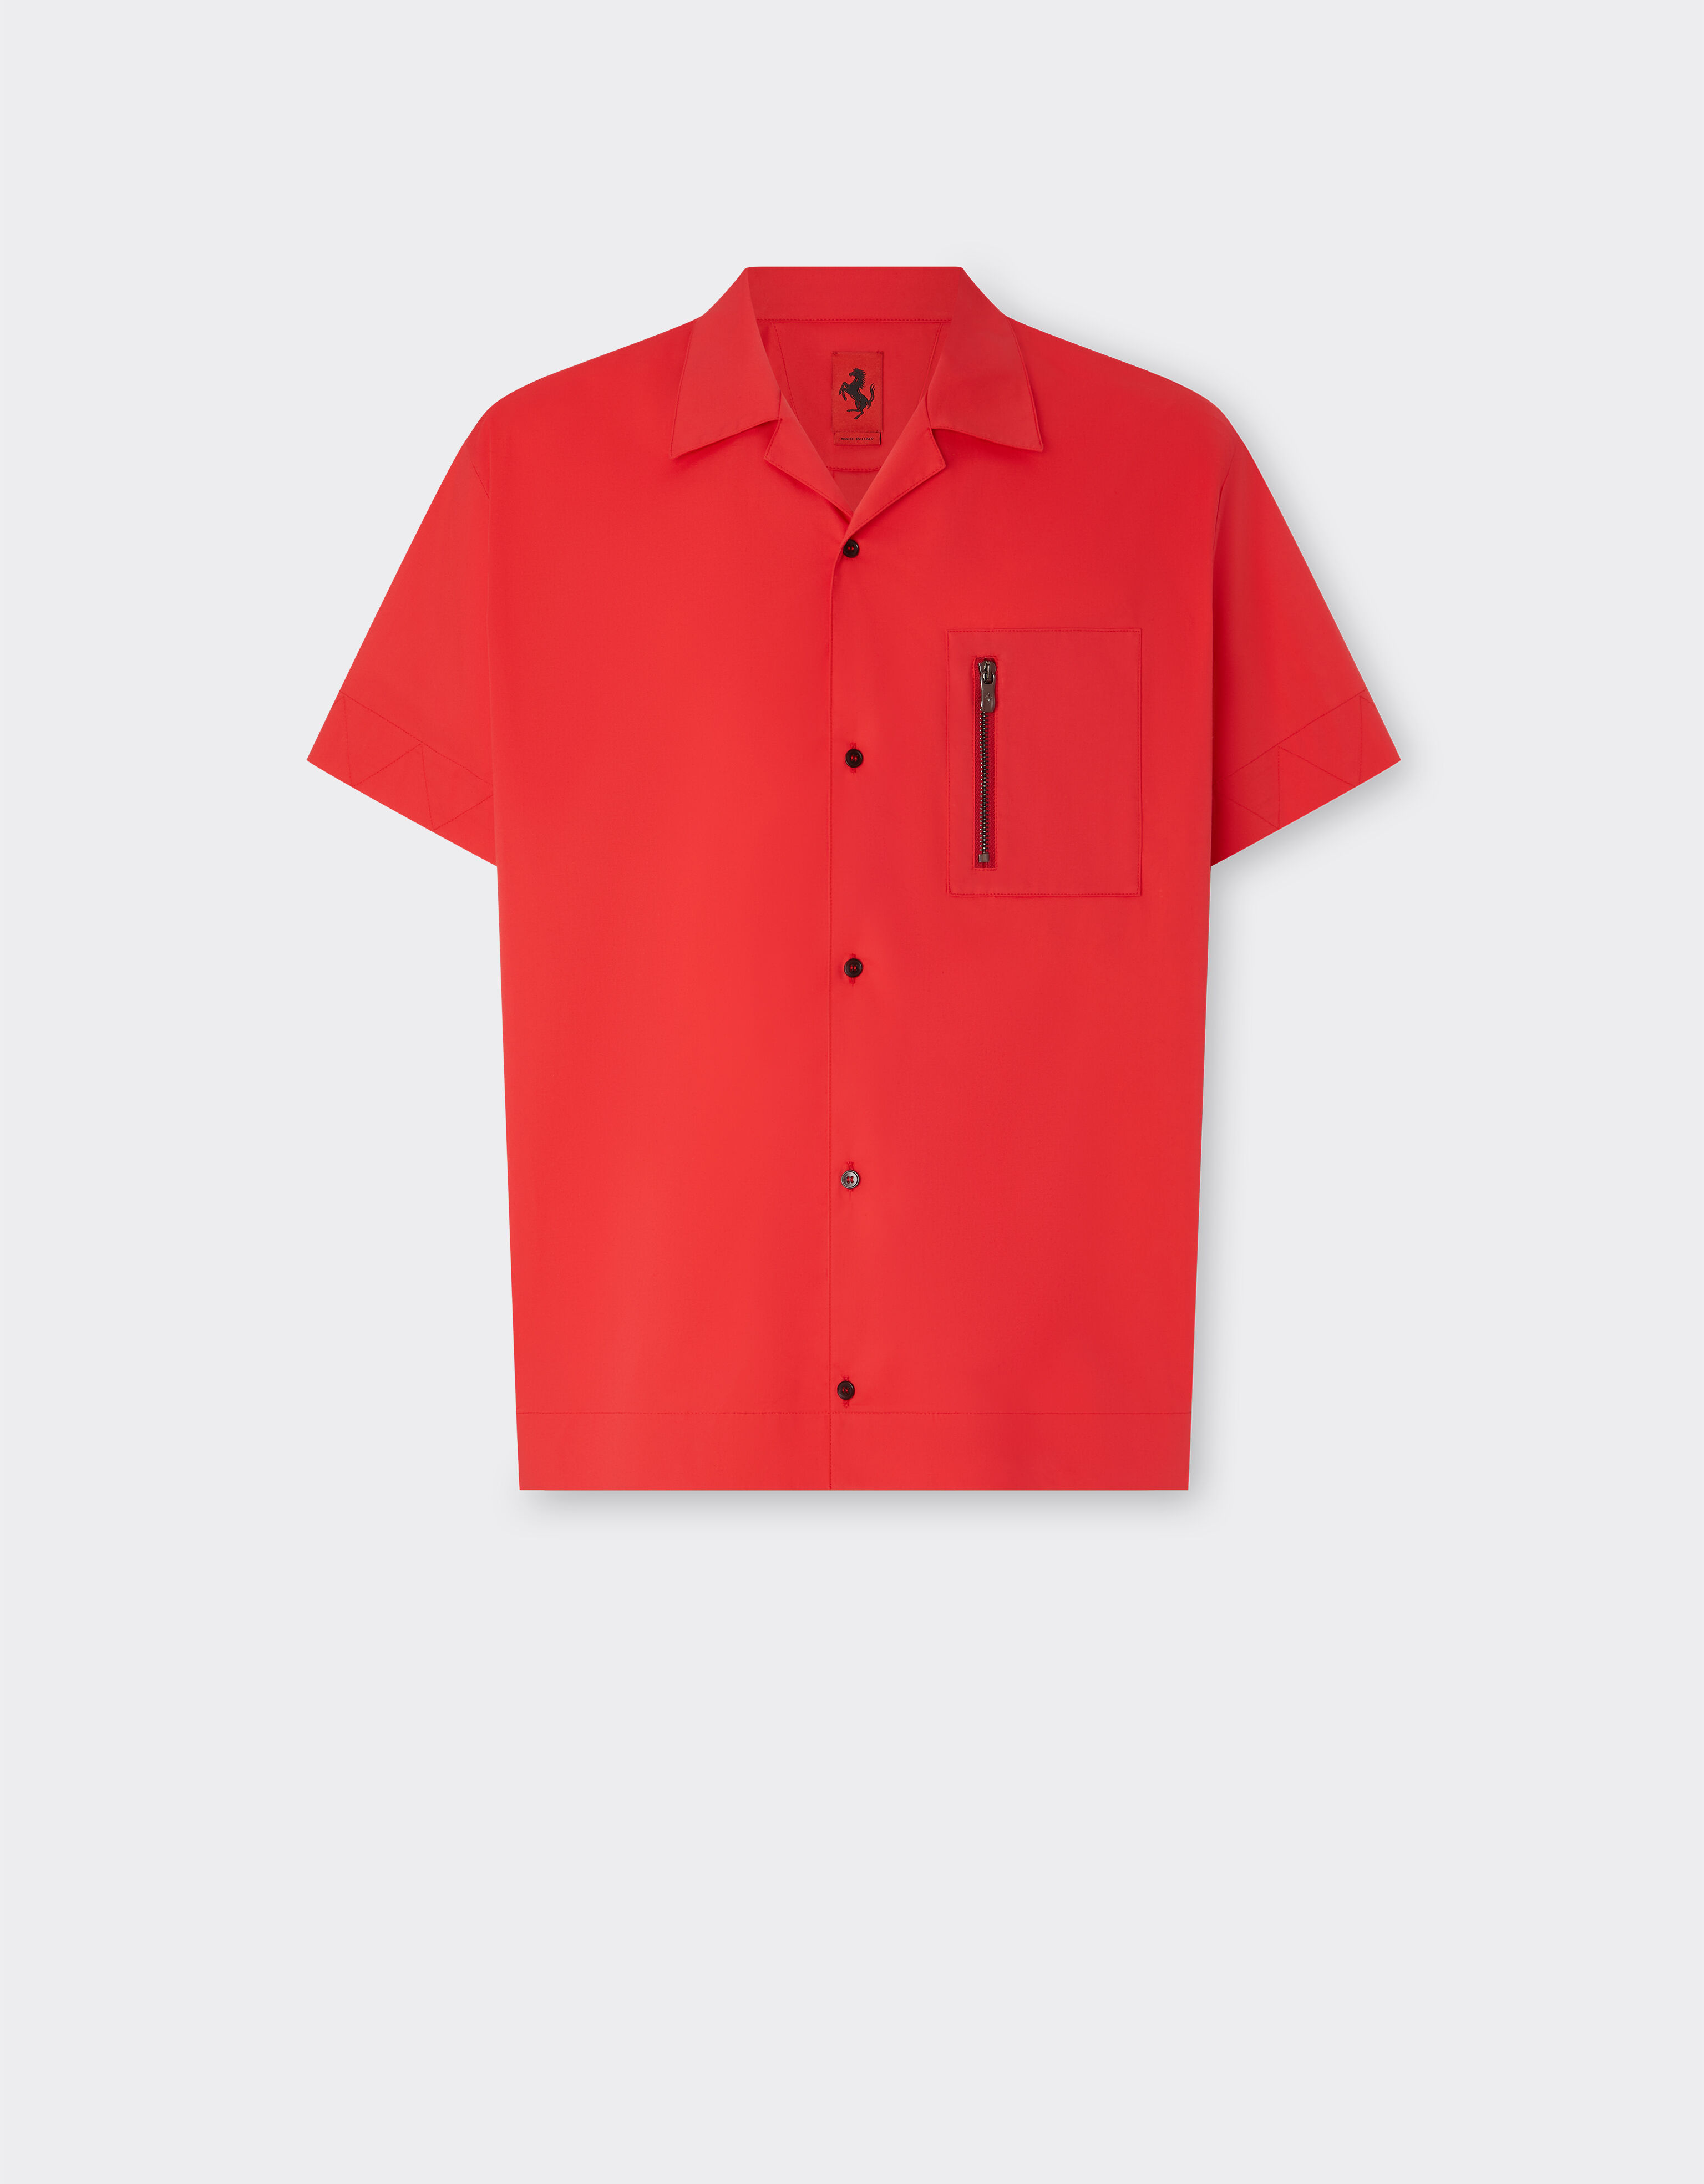 Ferrari Short-sleeved cotton shirt Giallo Modena 48314f